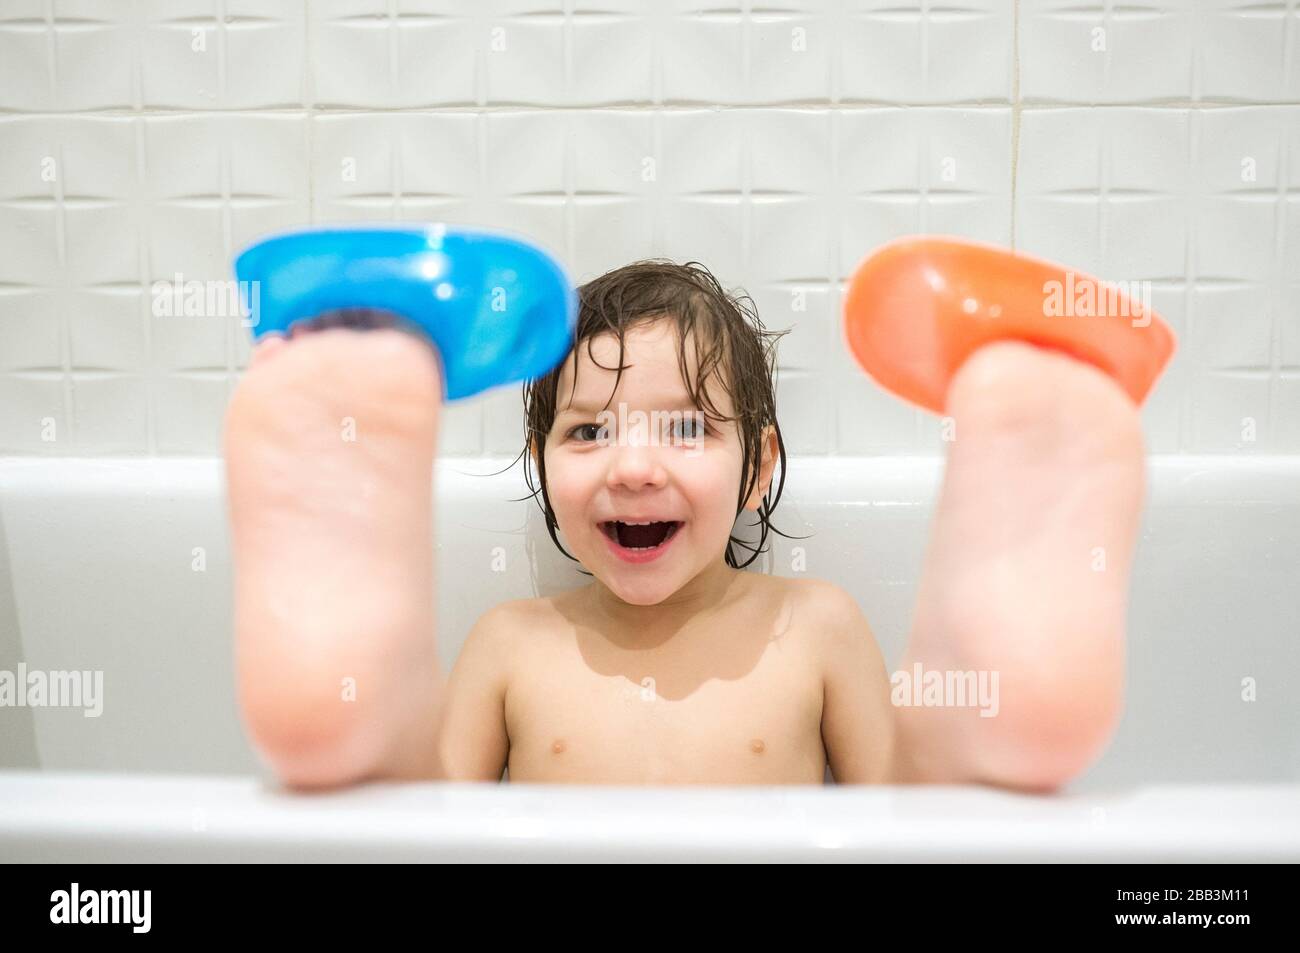 niño de 4 años usando barcos en los dedos de los pies. Los niños se divierten en el concepto de bañera. Ruido suave. Foto de stock